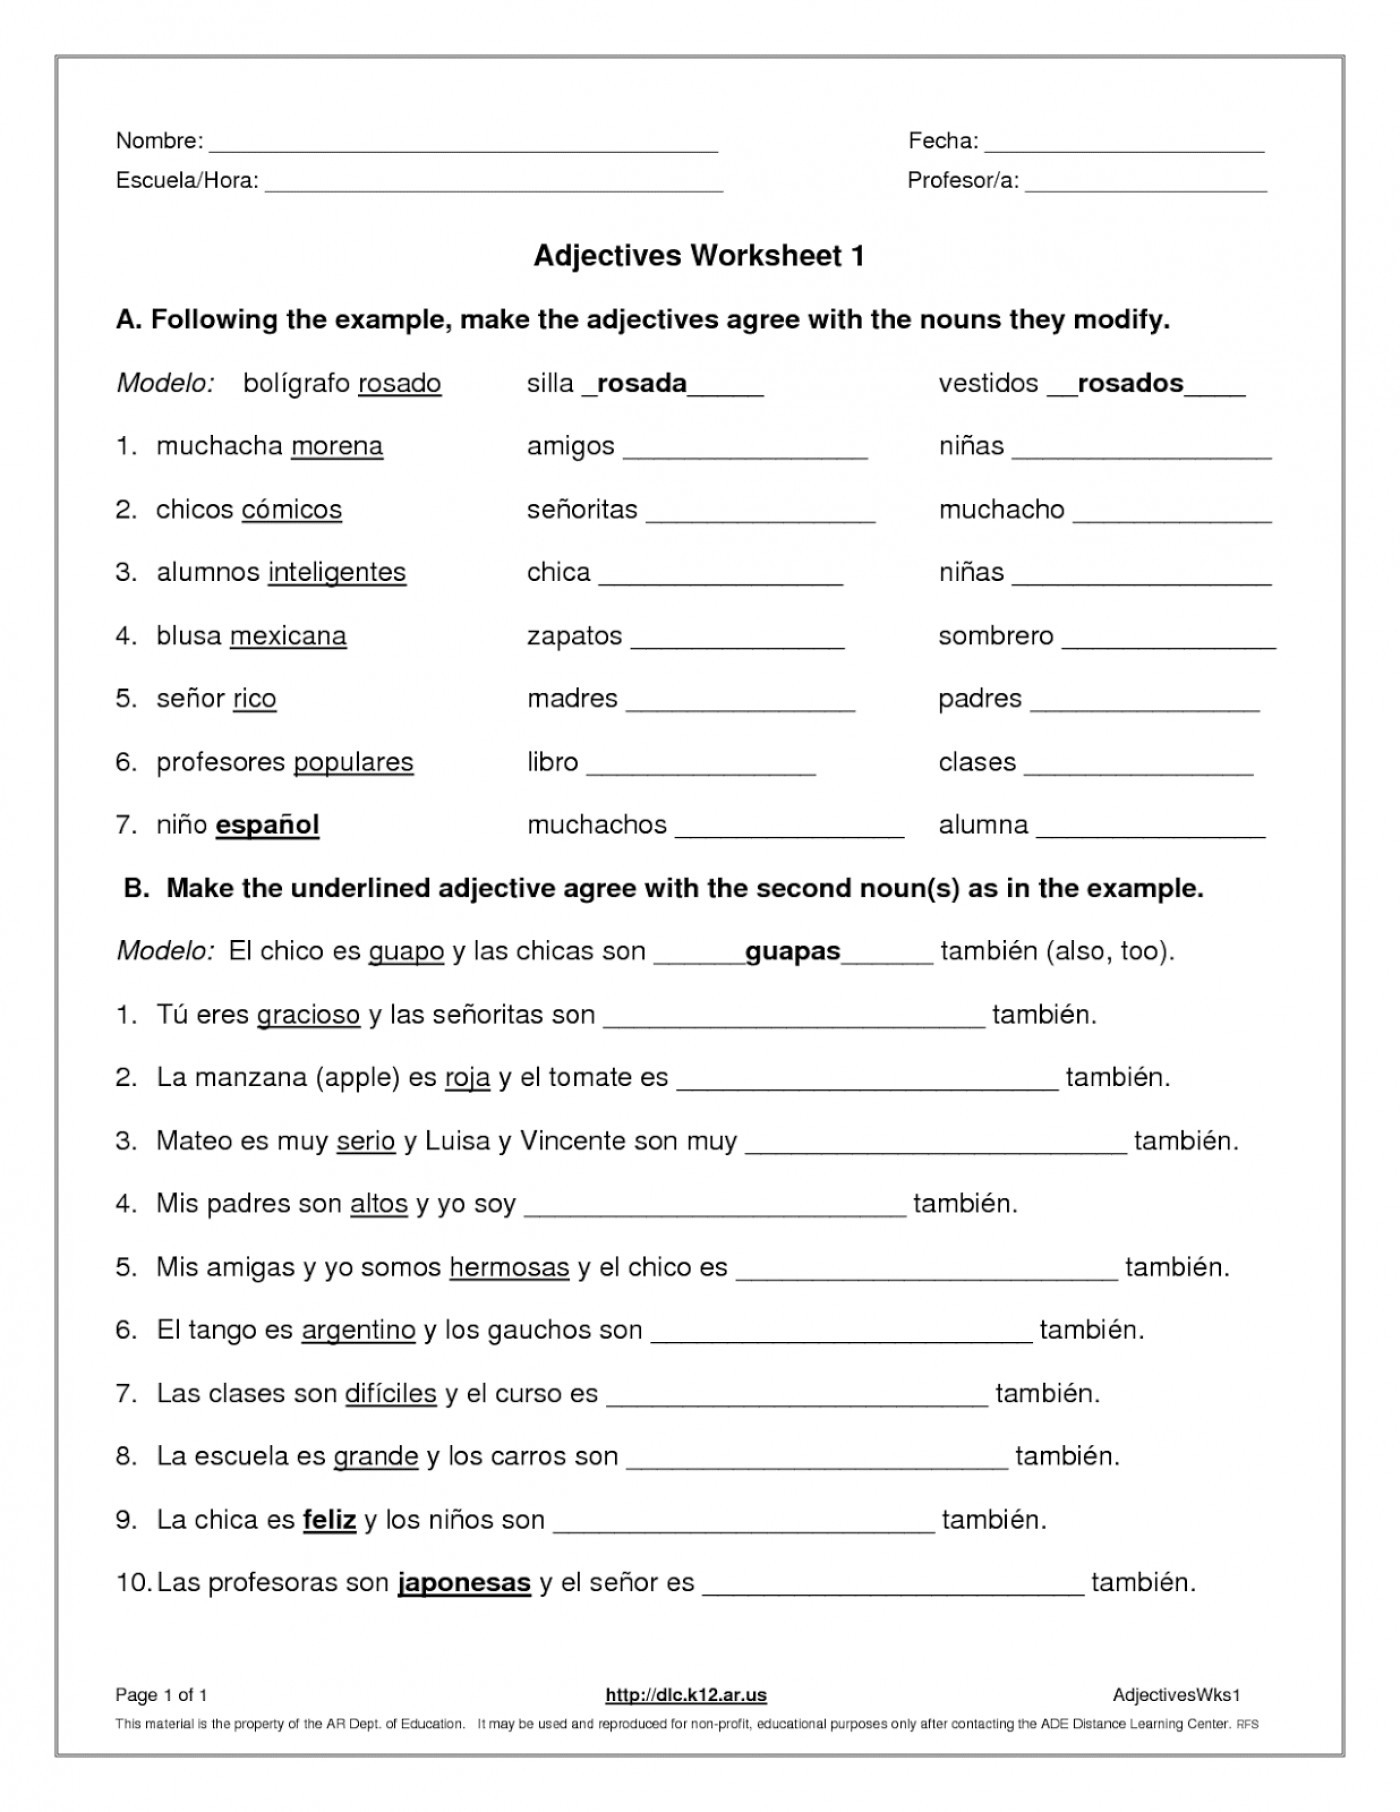 Demonstrative Adjectives Demonstrative Adjectives Worksheets 2018 Db excel